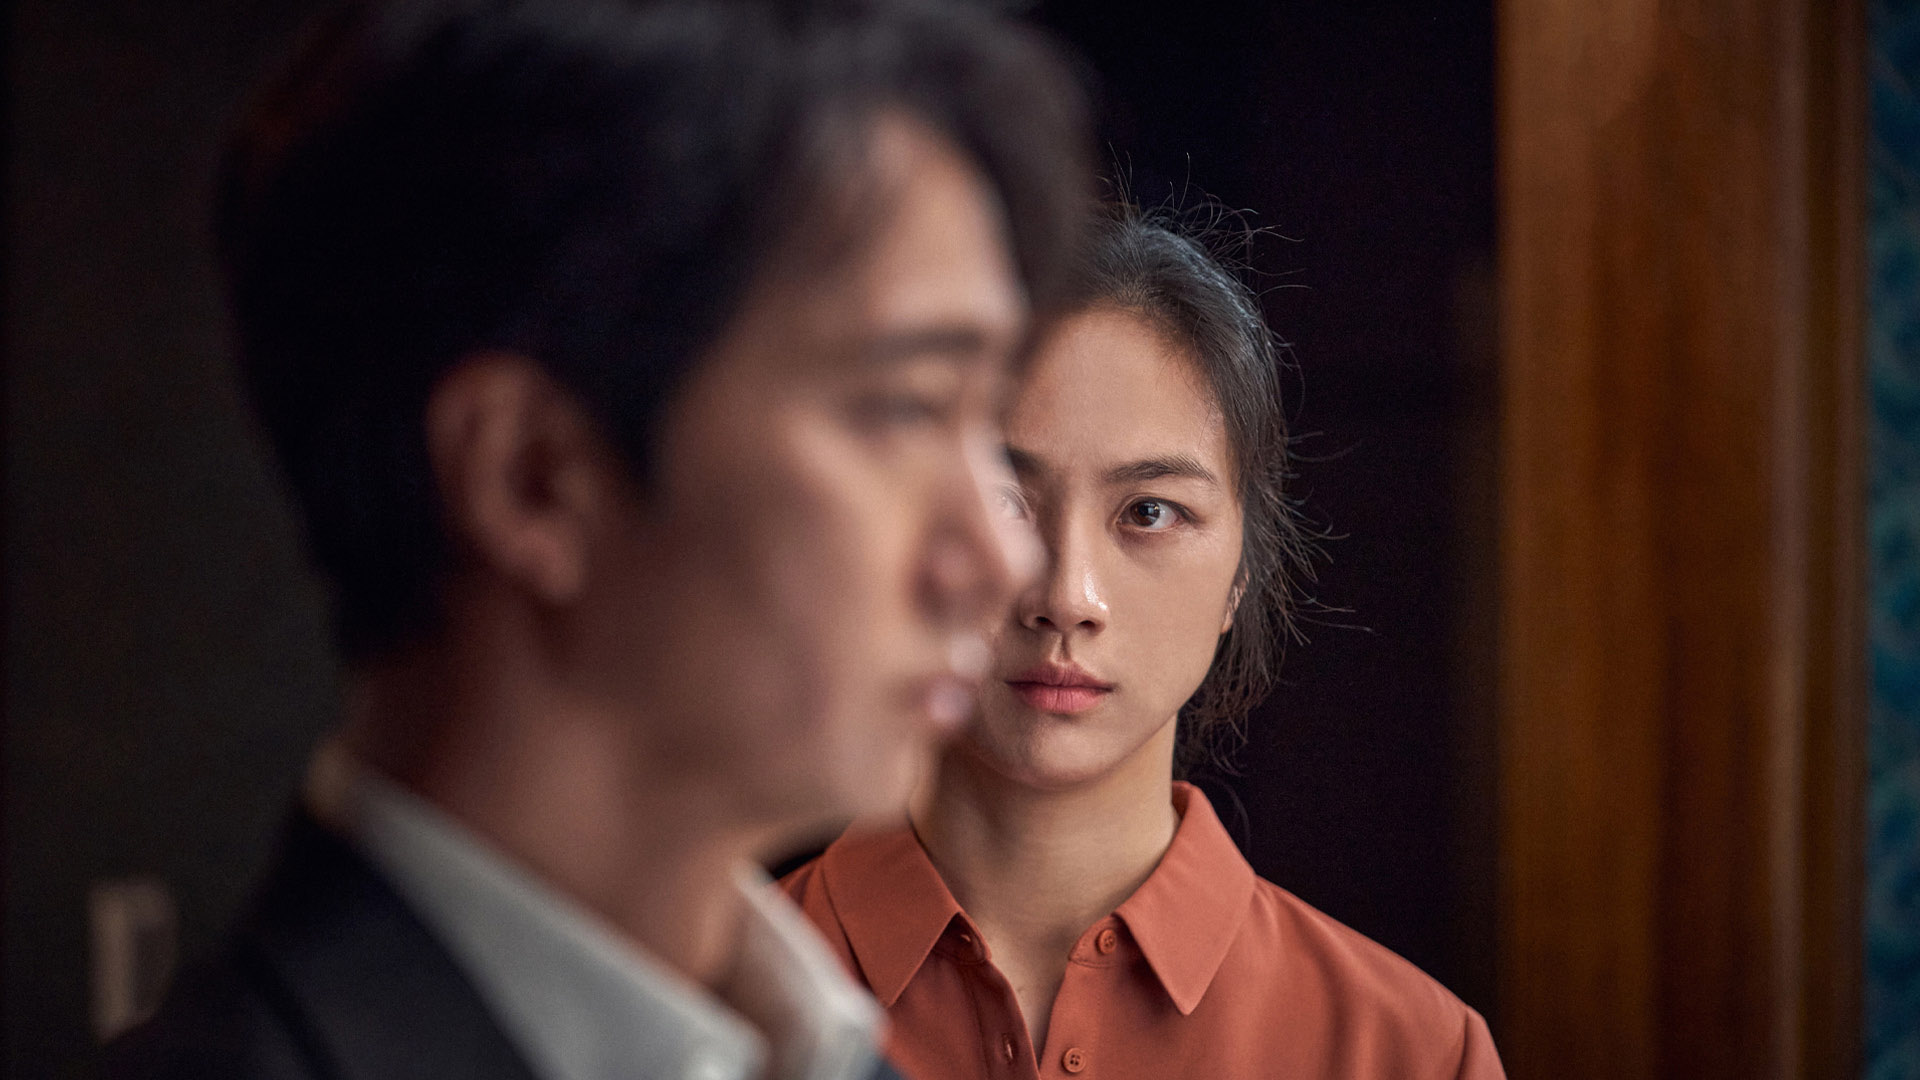 پارک چان ووک کارگردان فیلم تصمیم به جدایی